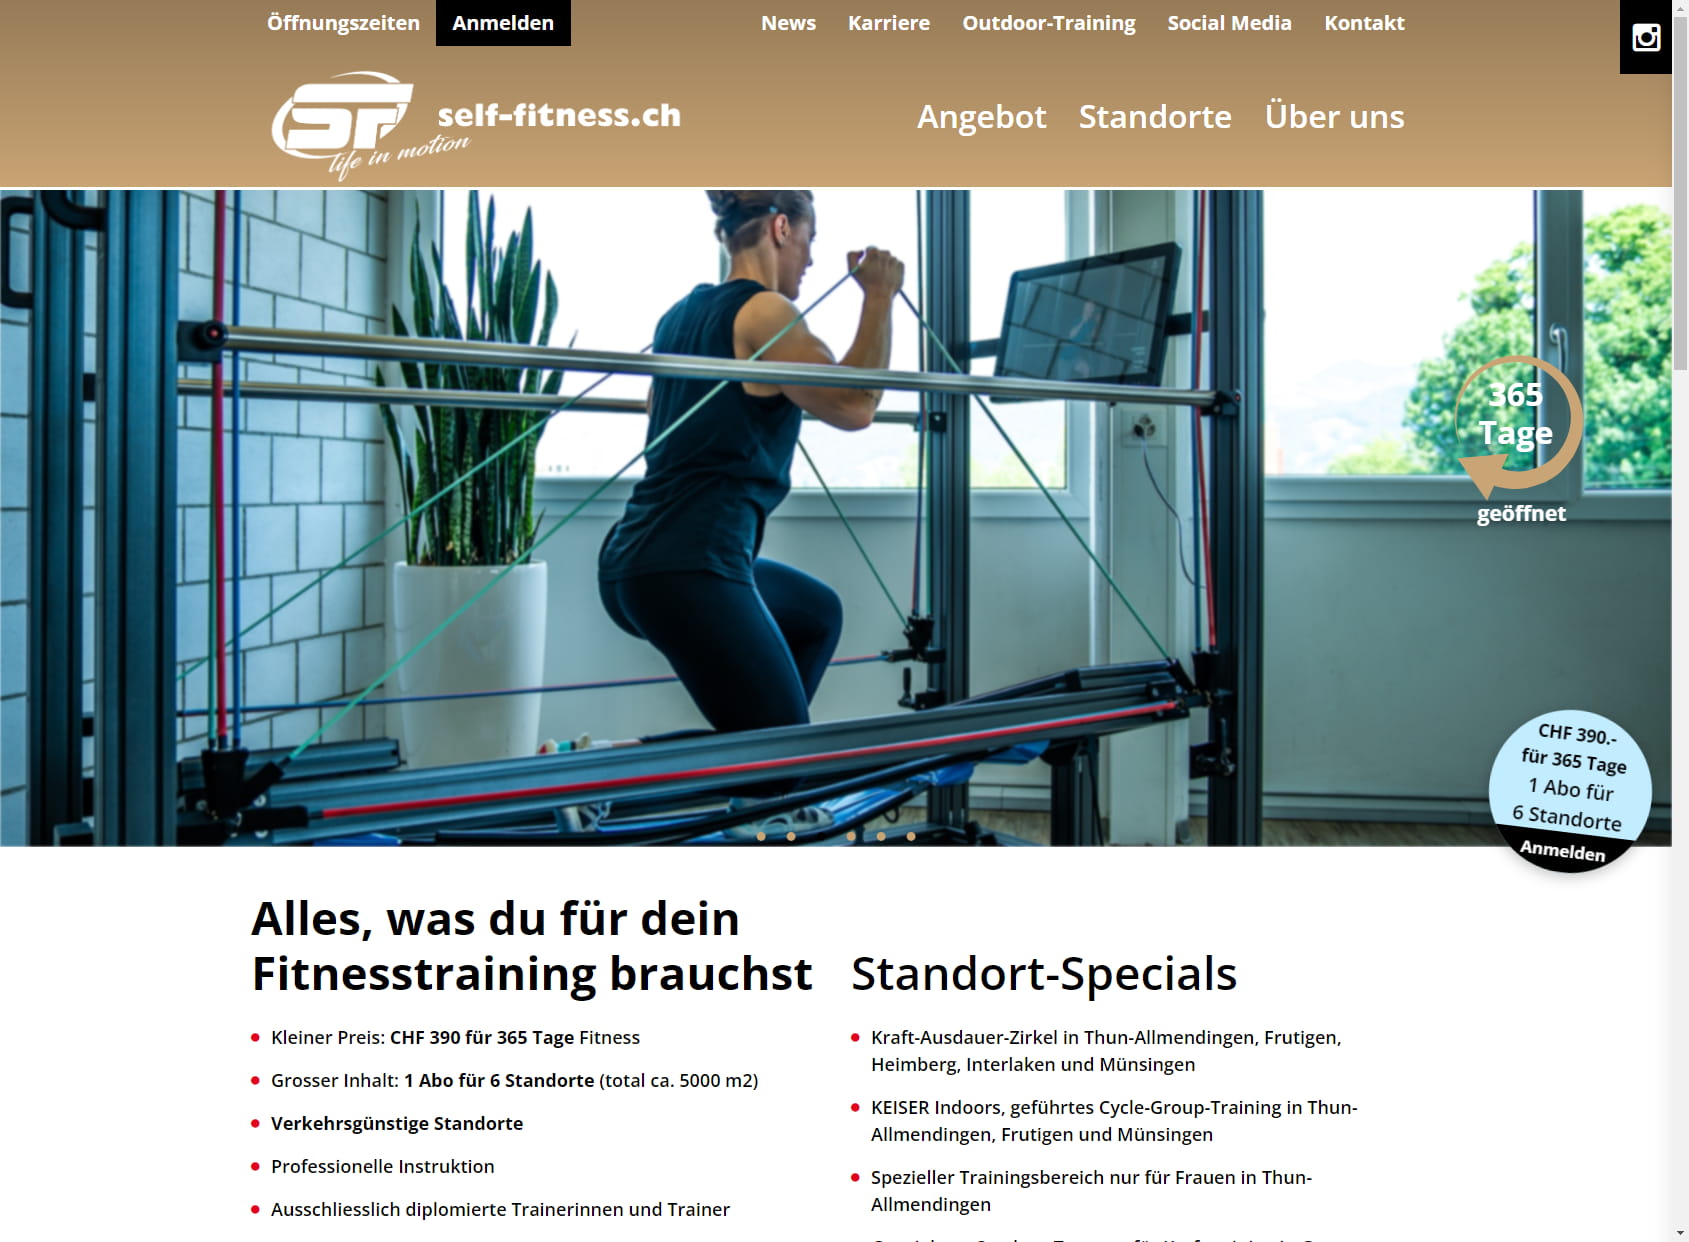 self-fitness.ch AG (Thun-Allmendingen)